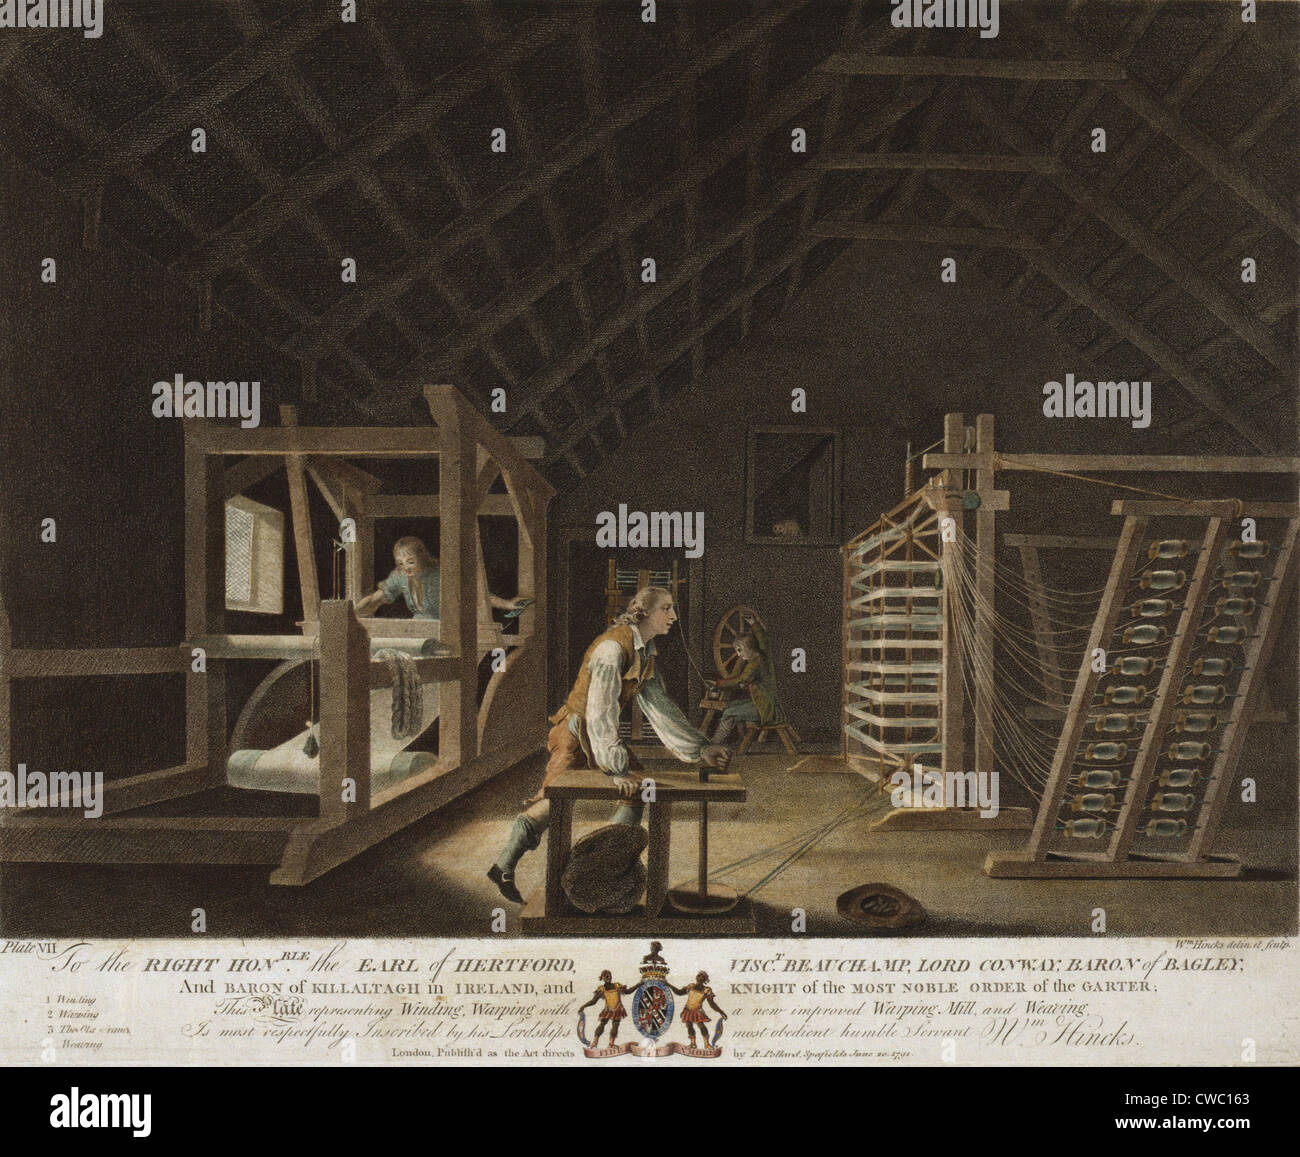 Irisches Leinen Herstellung, 1781. Innenansicht einer Mühle, wo drei Männer beschäftigt sind, in der Wicklung, verziehen und Garn. Bei Stockfoto